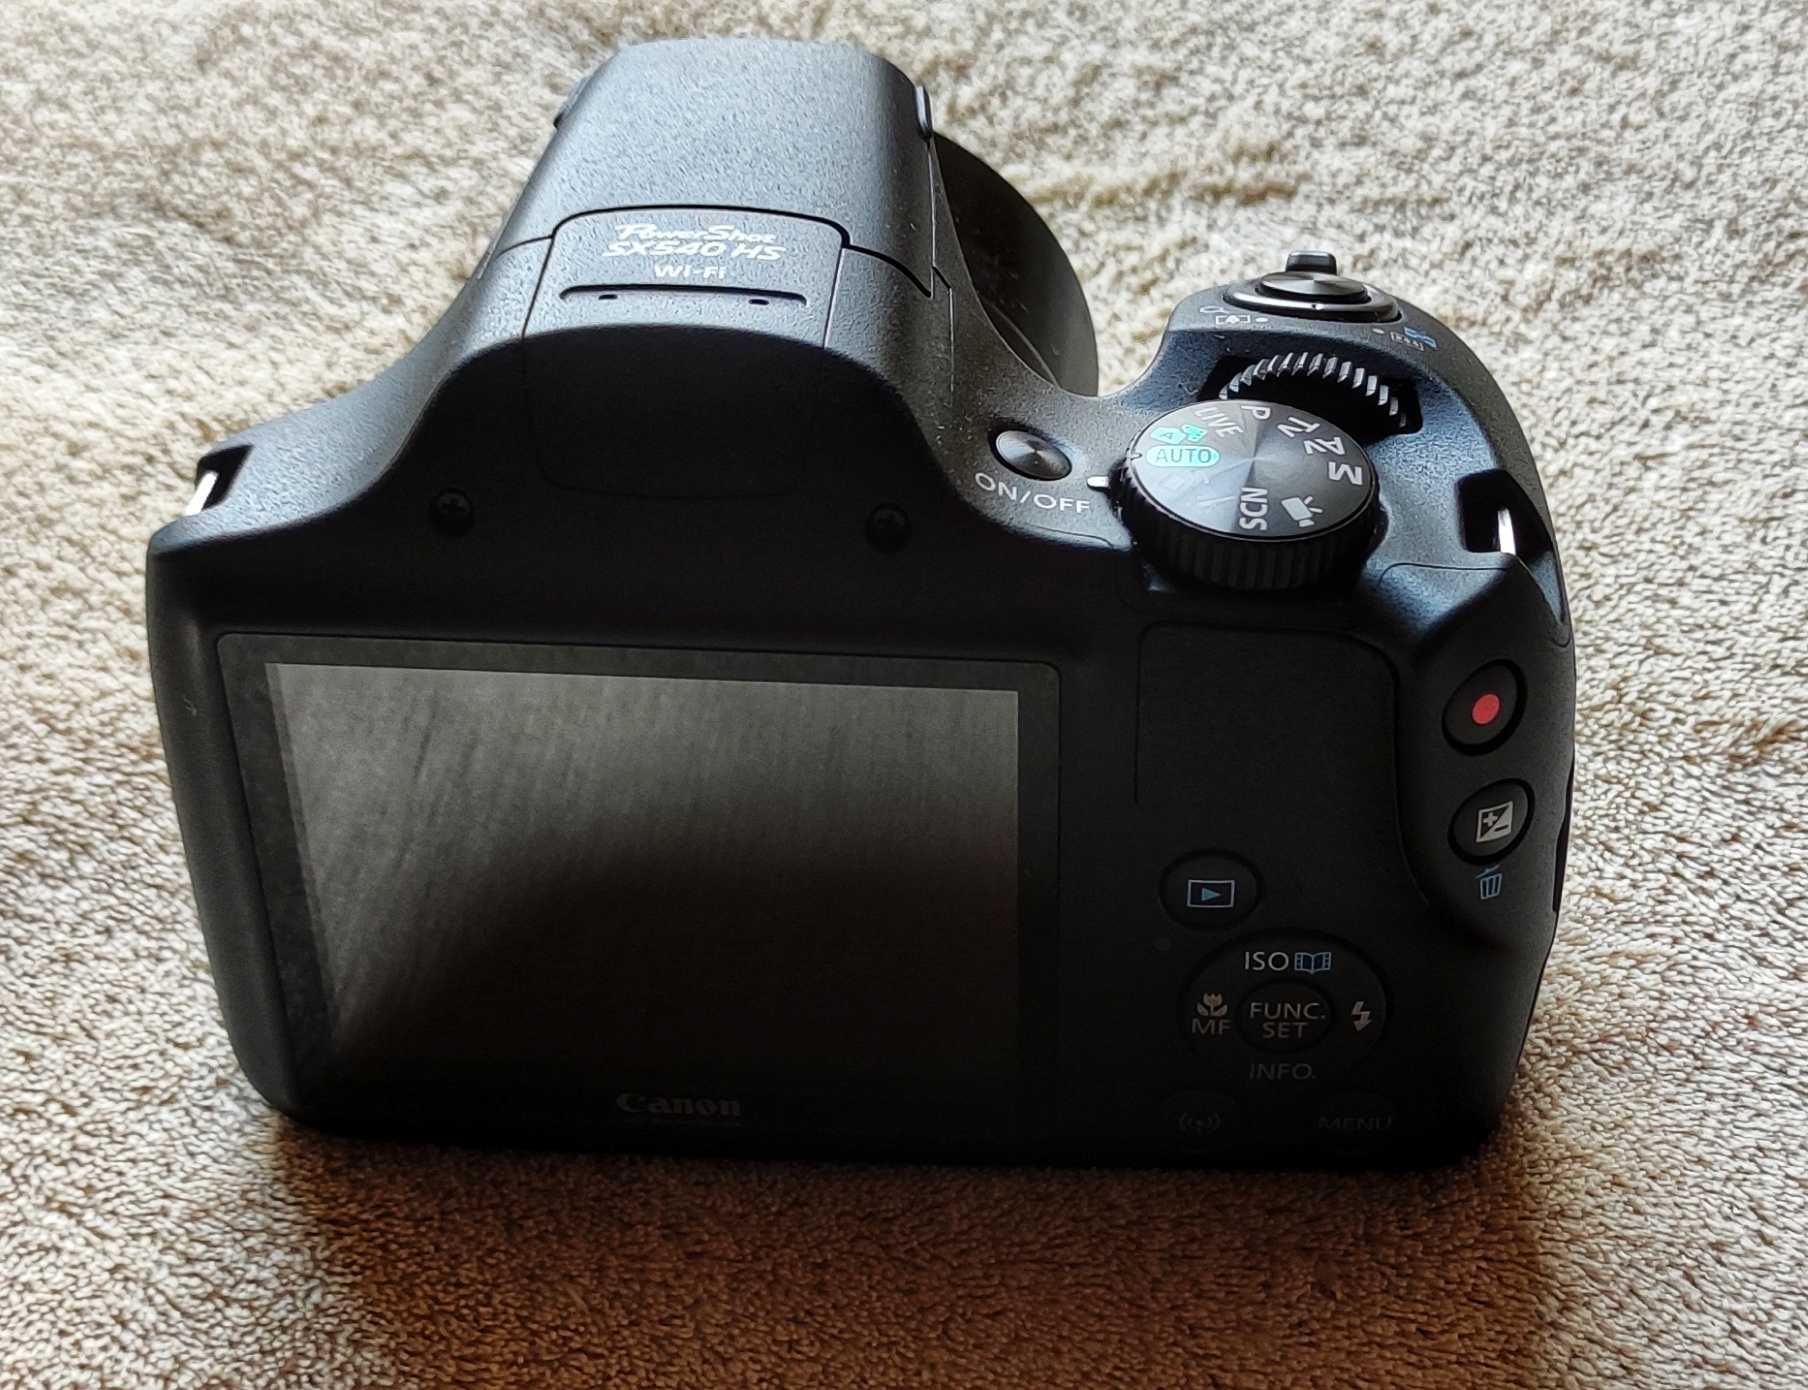 Canon PowerShot SX540HS